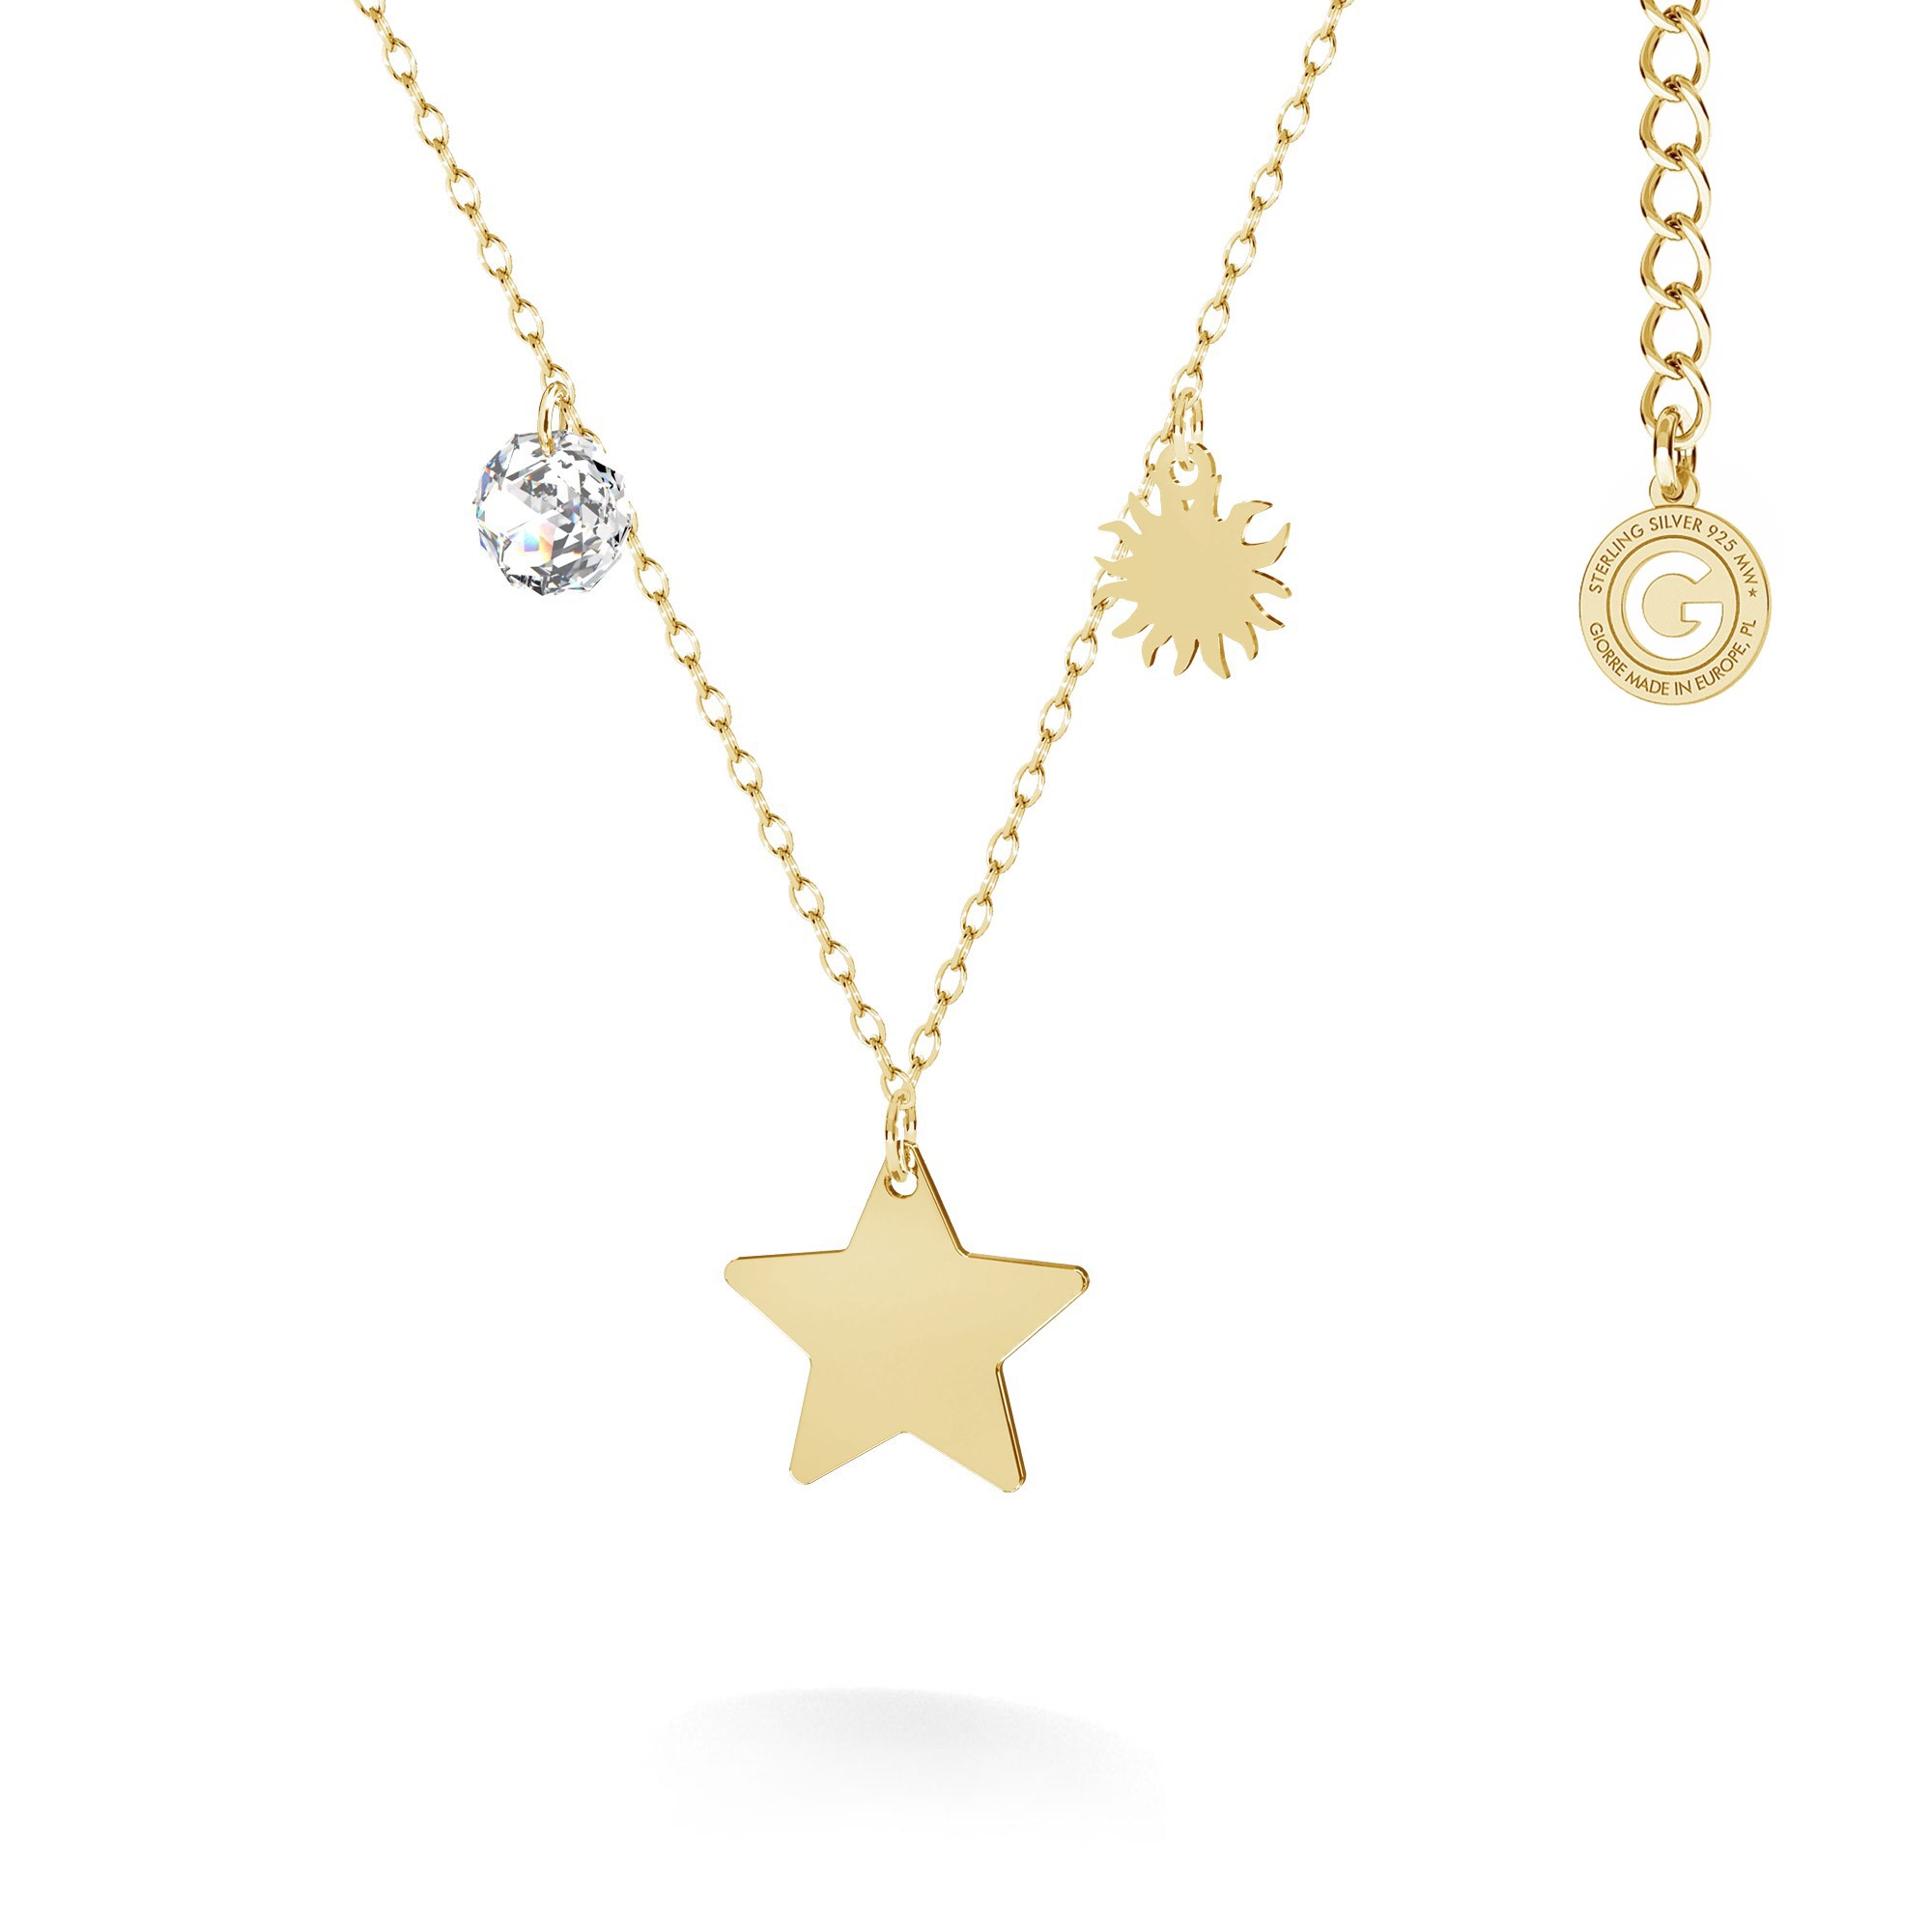 Srebrny naszyjnik z zawieszkami - gwiazda, słońce, kryształ Swarovski T°ra'vel'' , srebro 925